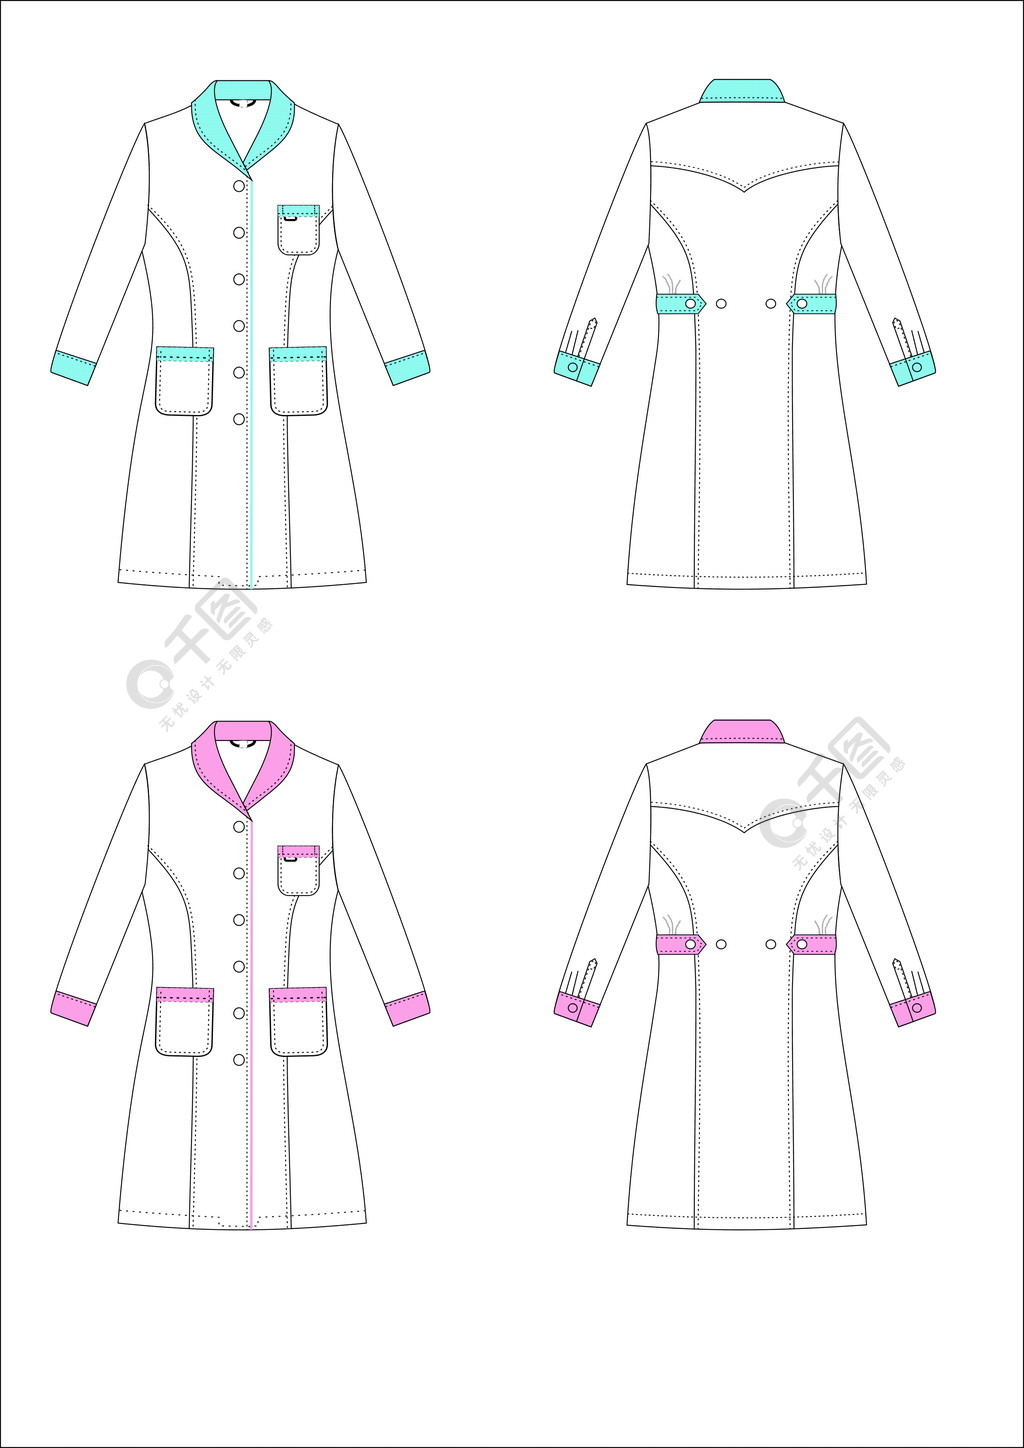 服装设计矢量图白大褂两款配色方案青果领图